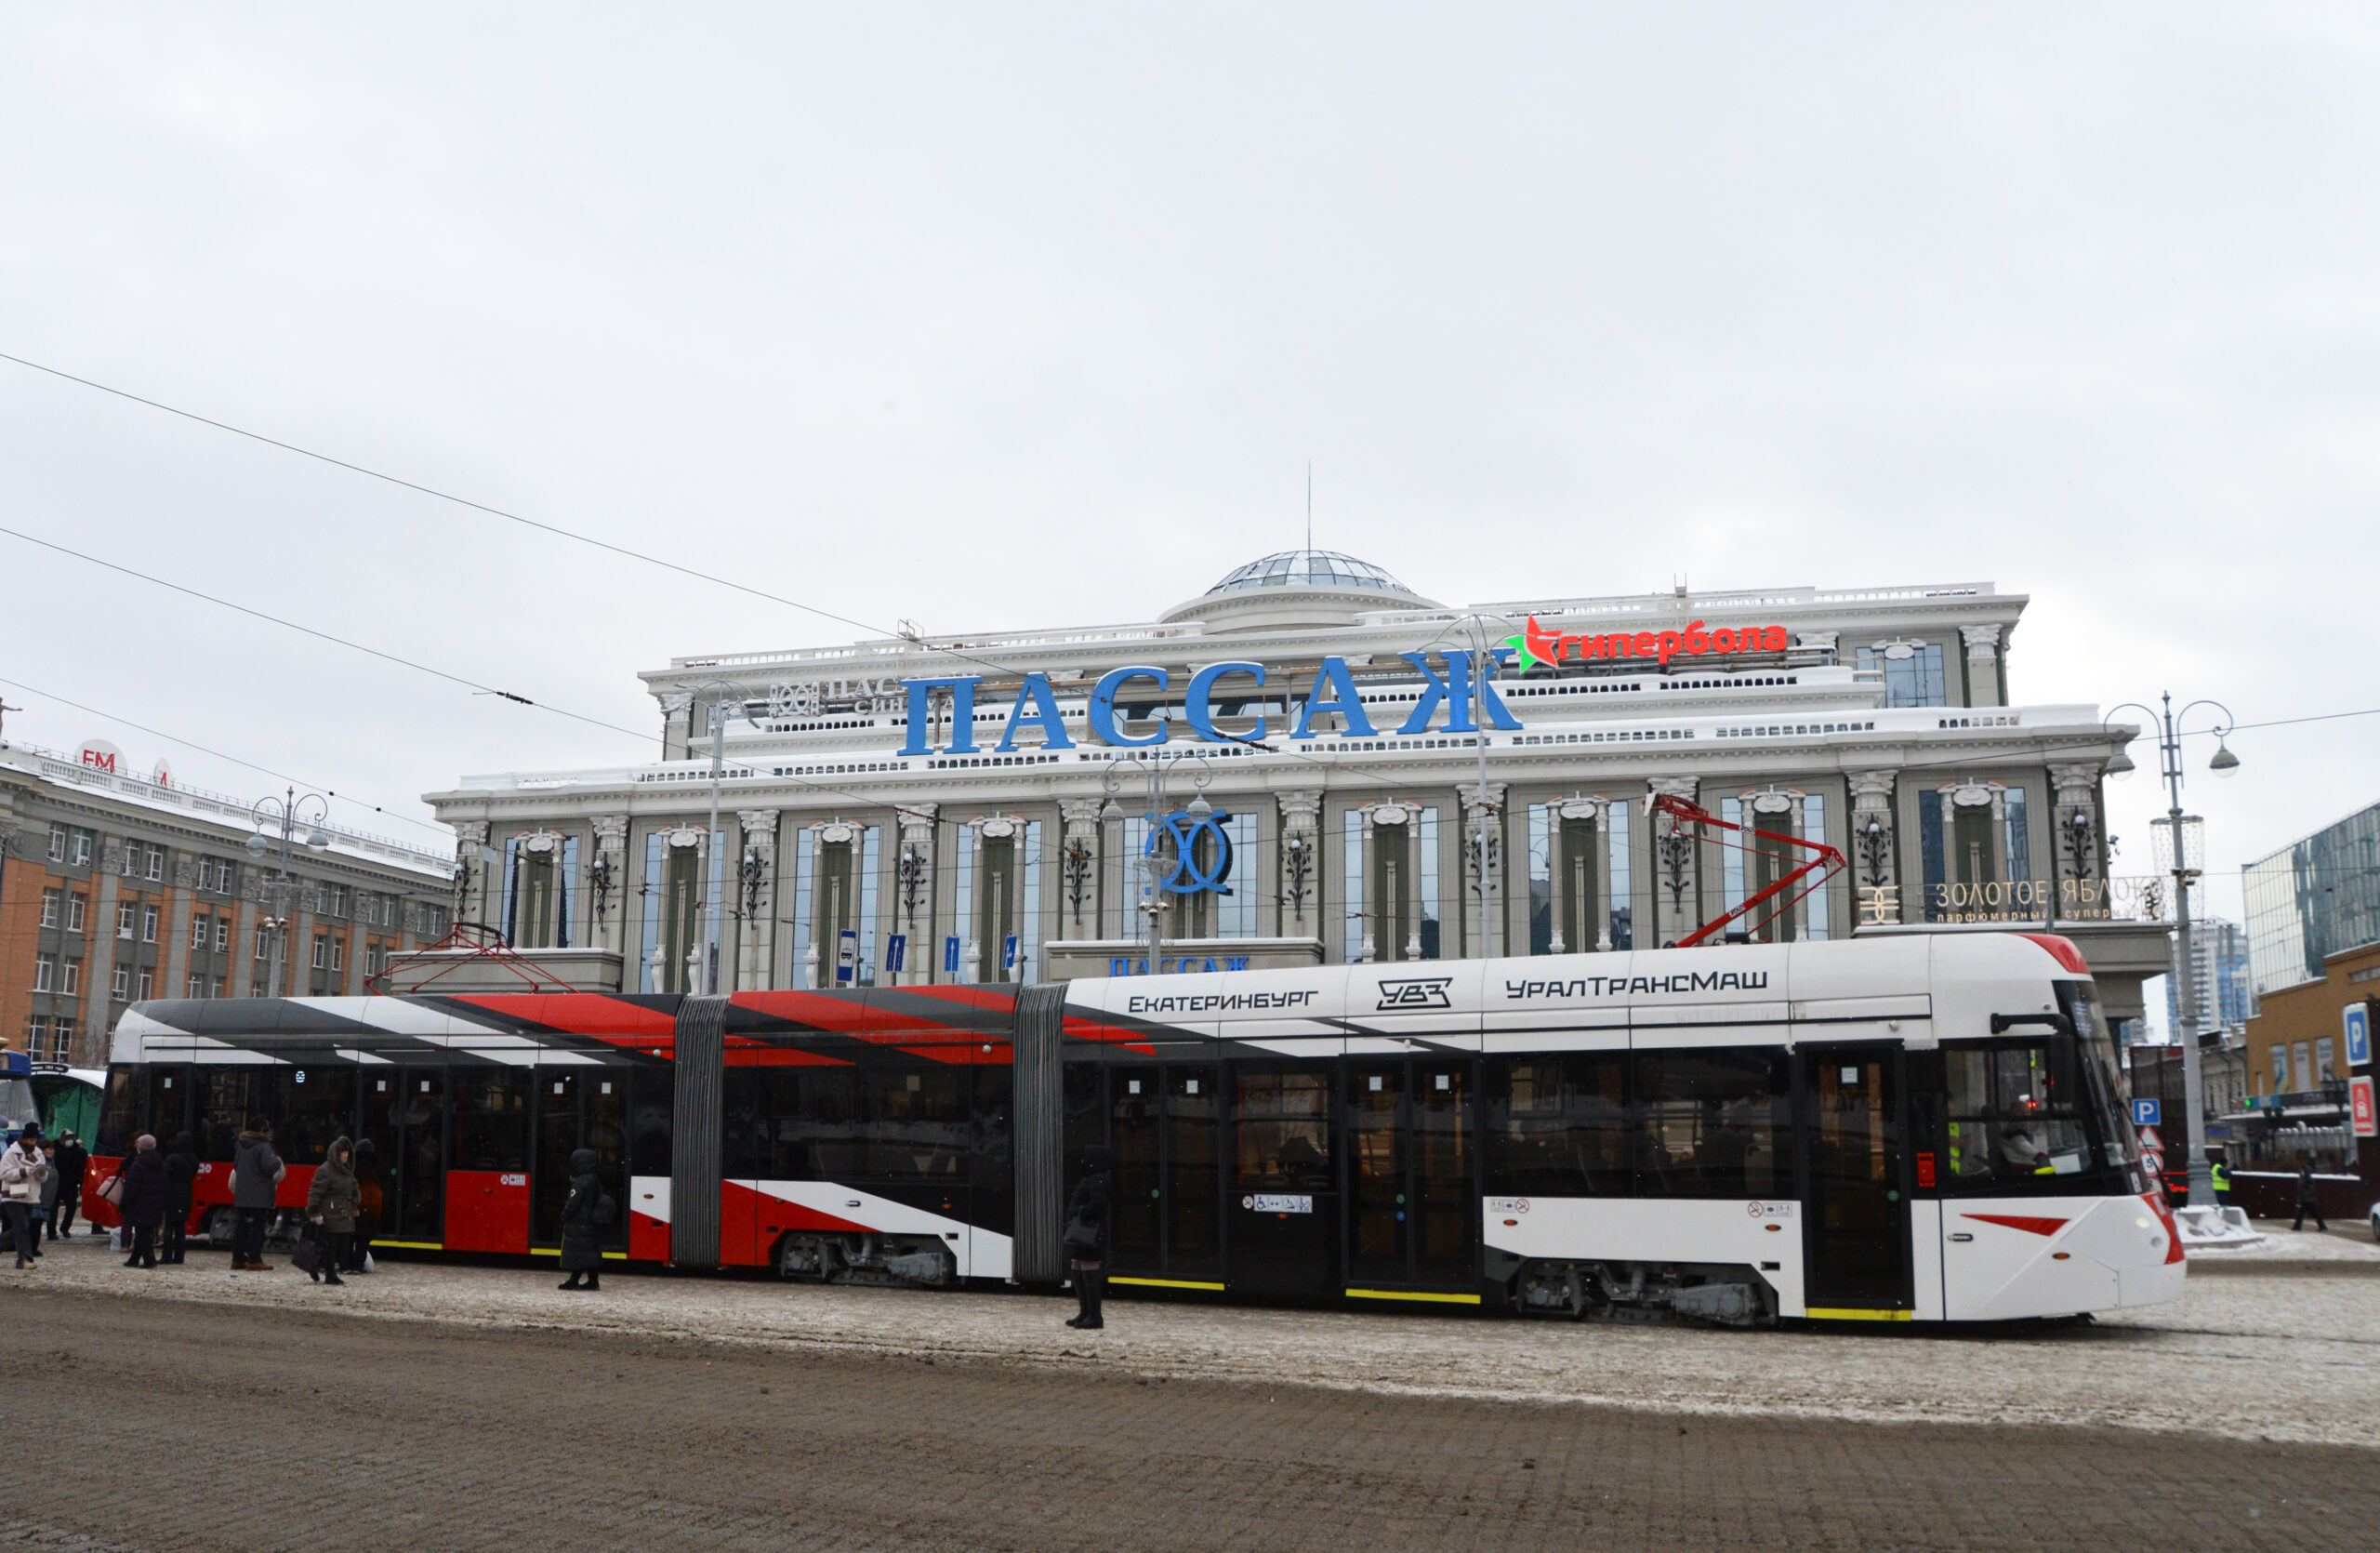 71-418 tram by Uraltransmash on trials in Yekaterinburg